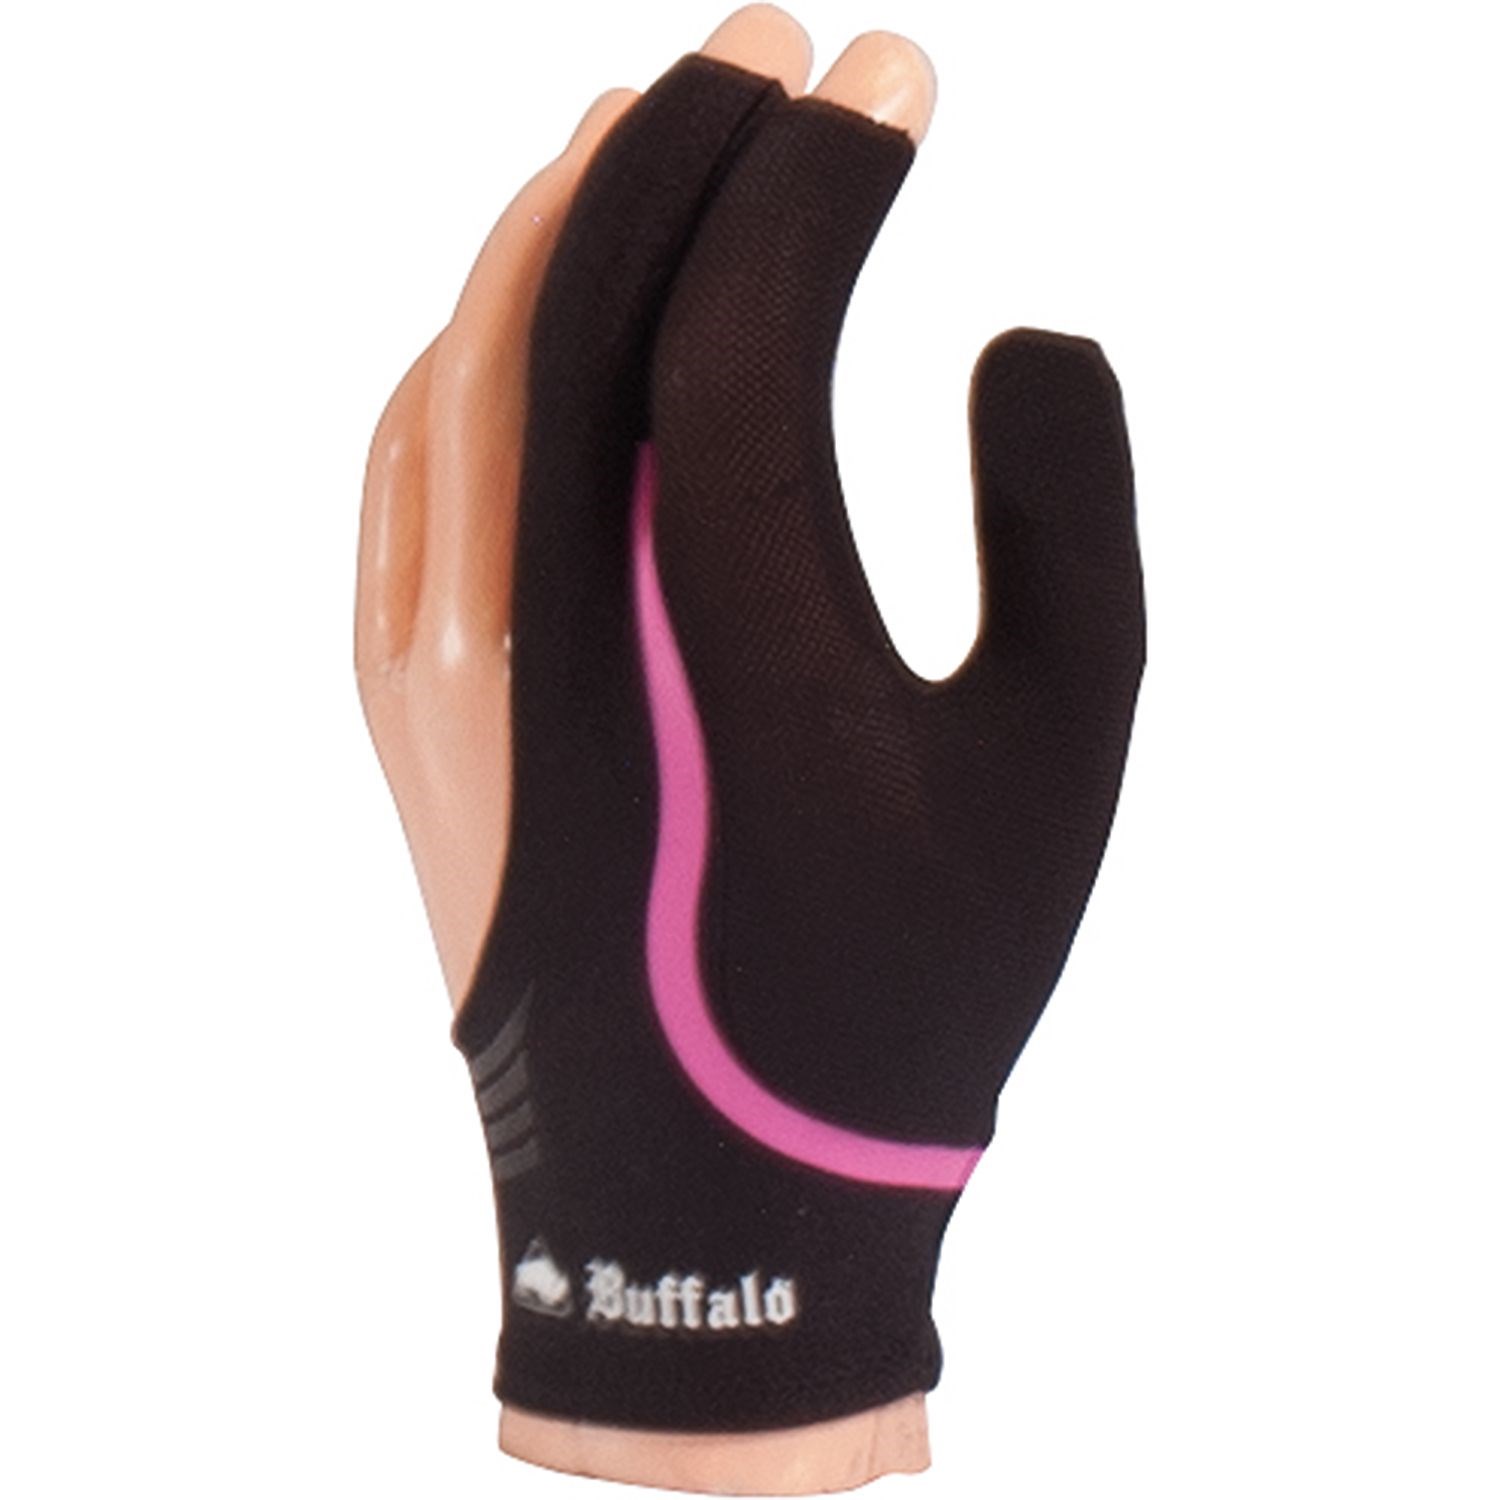 Buffalo handske i sort/pink begge hænder - str S